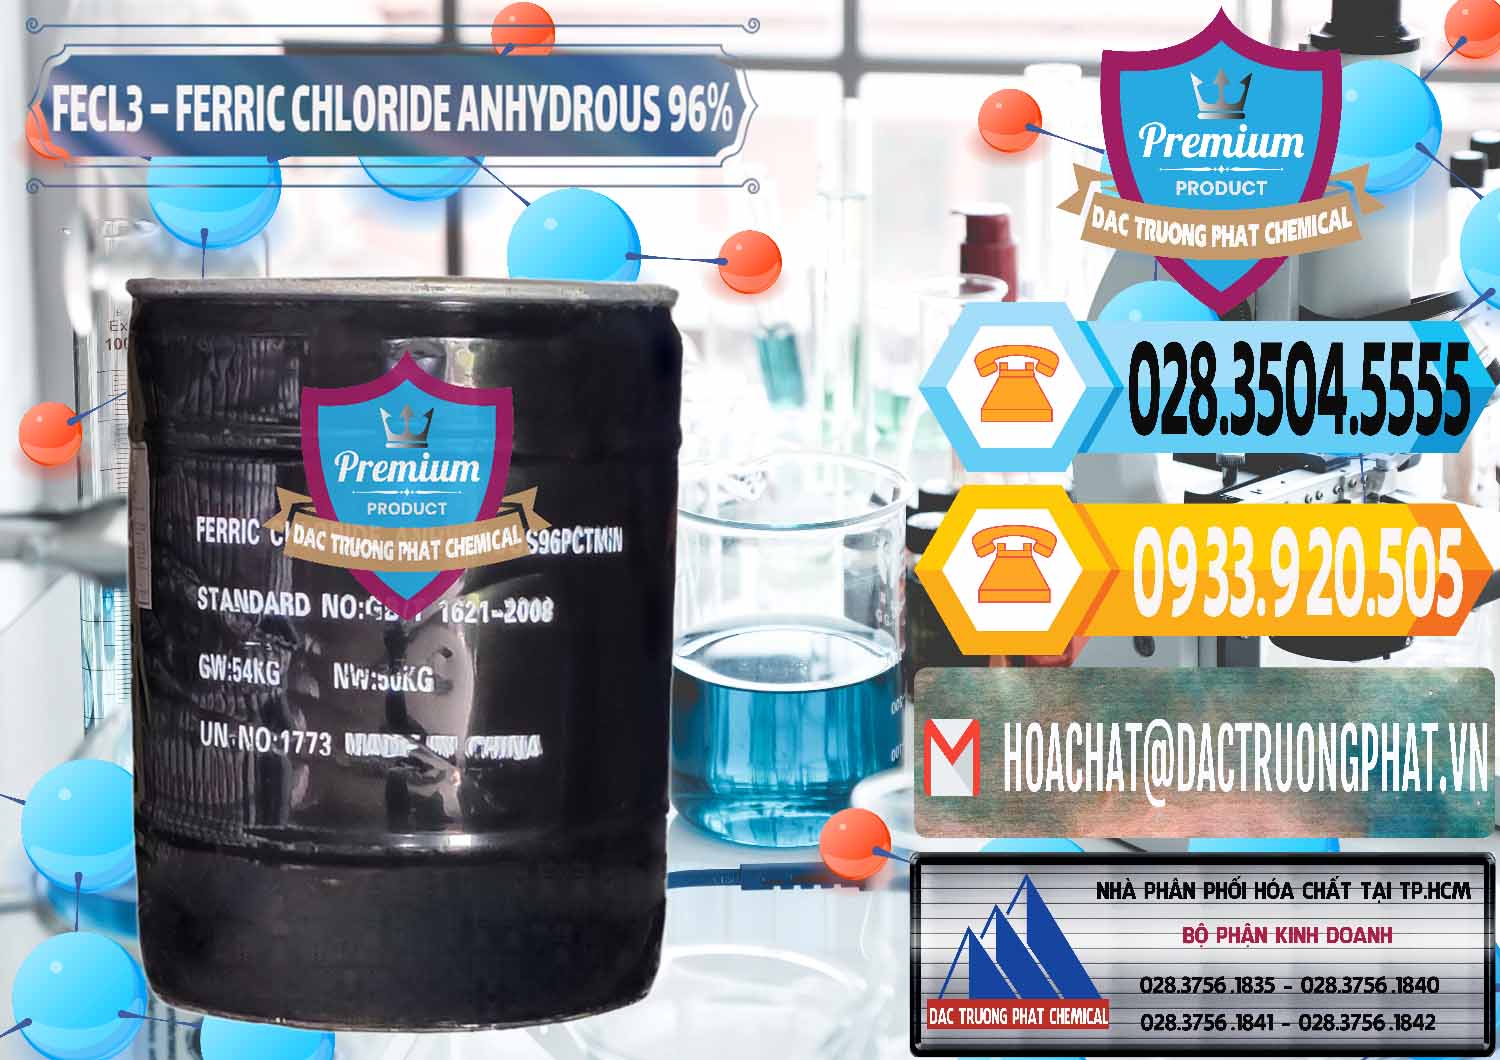 Nơi kinh doanh và bán FECL3 – Ferric Chloride Anhydrous 96% Trung Quốc China - 0065 - Cty nhập khẩu _ phân phối hóa chất tại TP.HCM - hoachattayrua.net